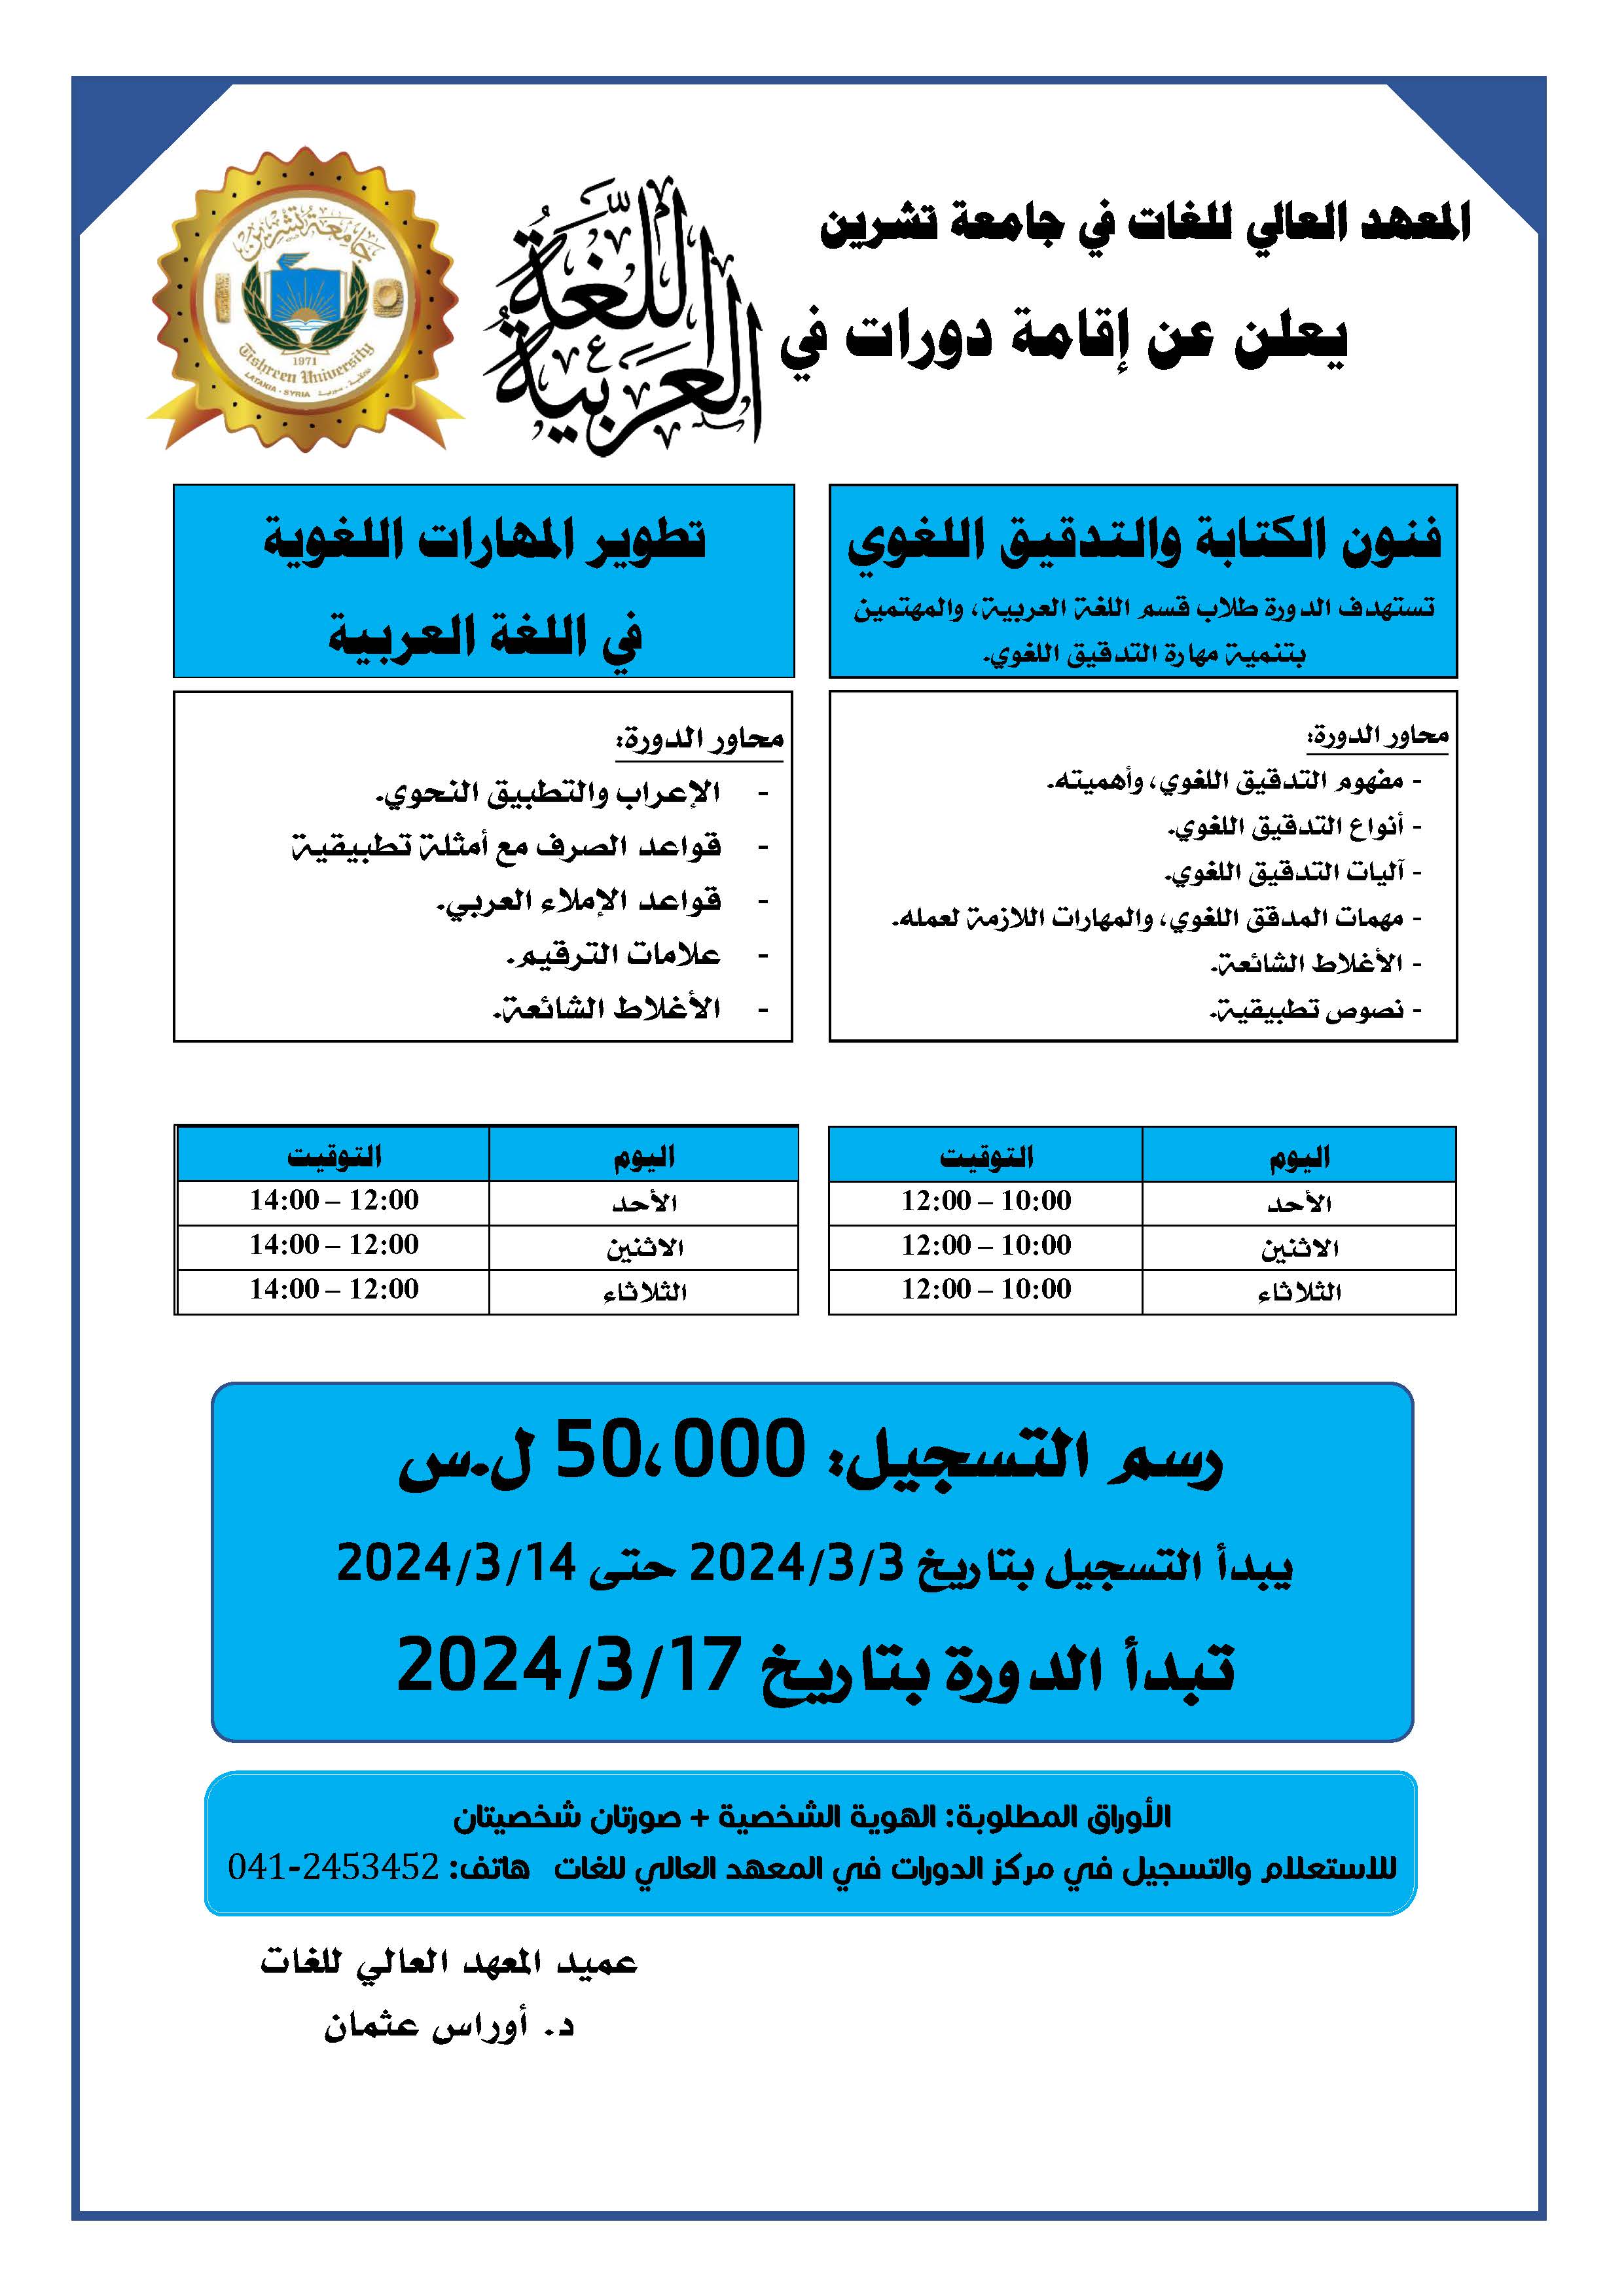 المعهد العالي للغات يعلن إقامة دورات في اللغة العربية تبدء بتاريخ 17-03-2024